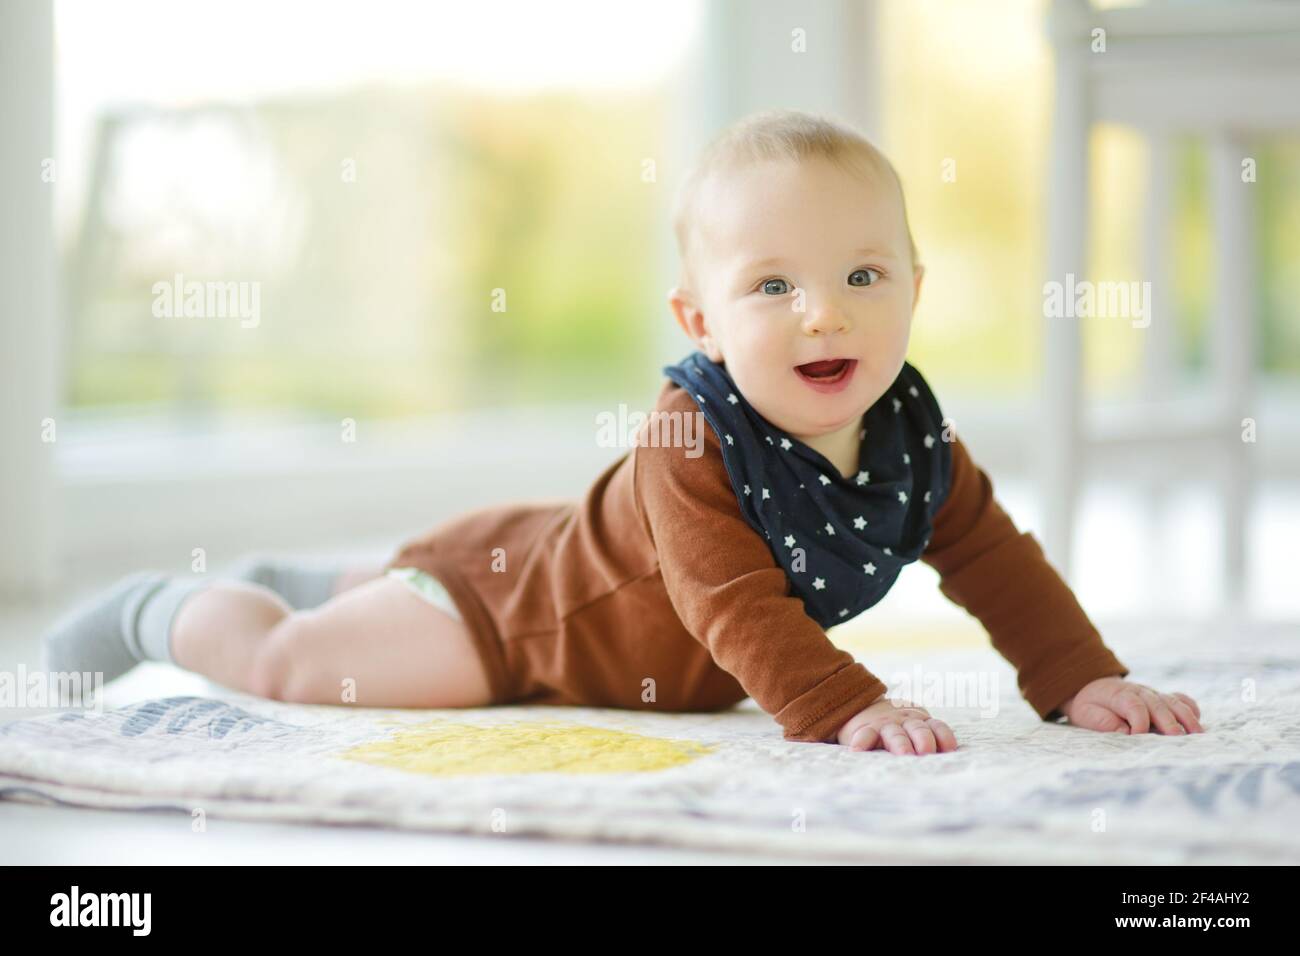 Niedlicher fünf Monate alter Junge, der auf seinem Bauch liegt. Baby während der Bauchzeit. Nettes kleines Kind lernen zu kriechen. Stockfoto